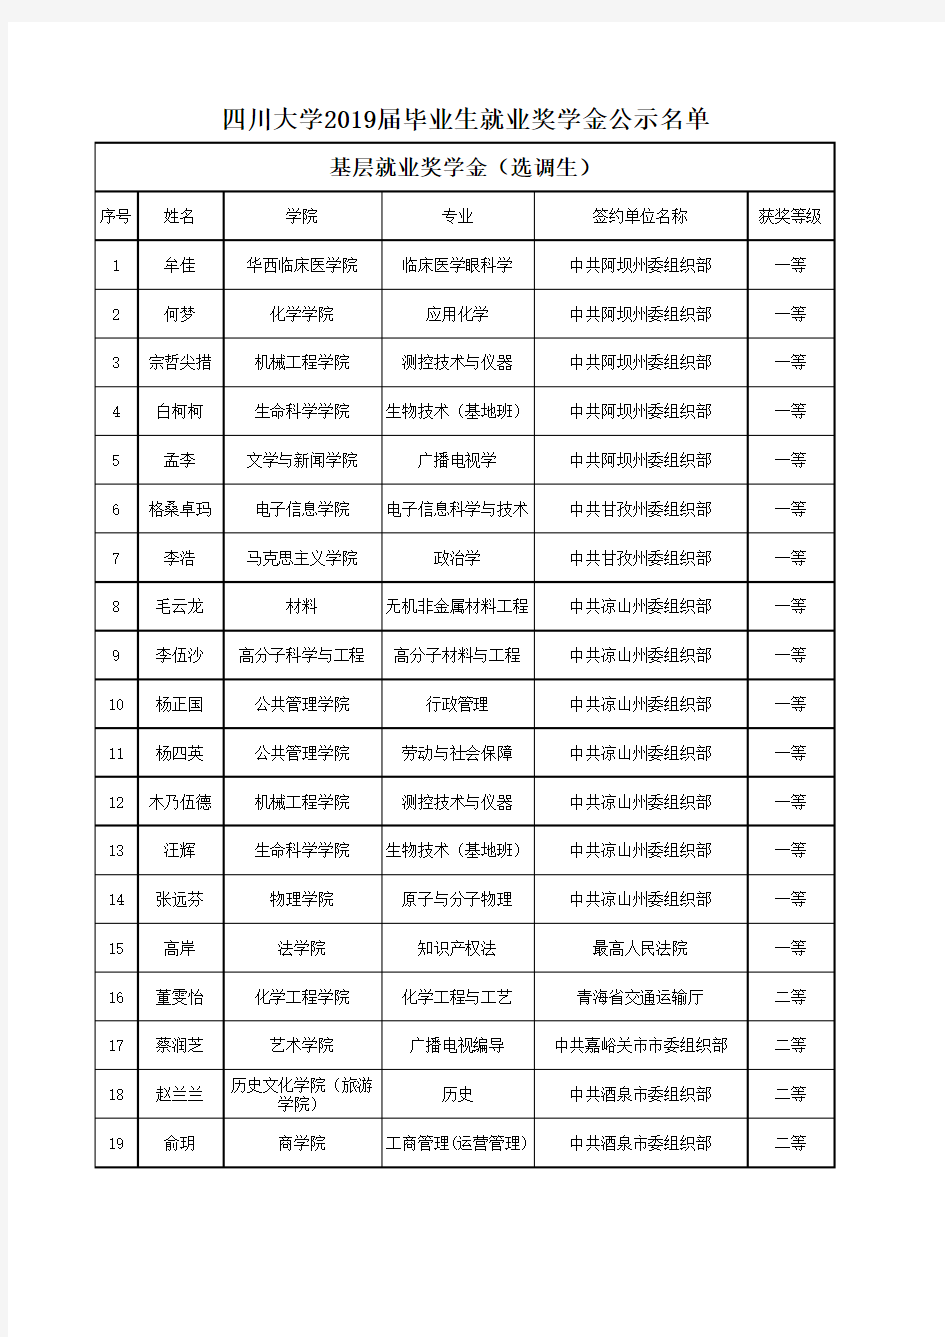 四川大学2019届毕业生就业奖学金公示名单